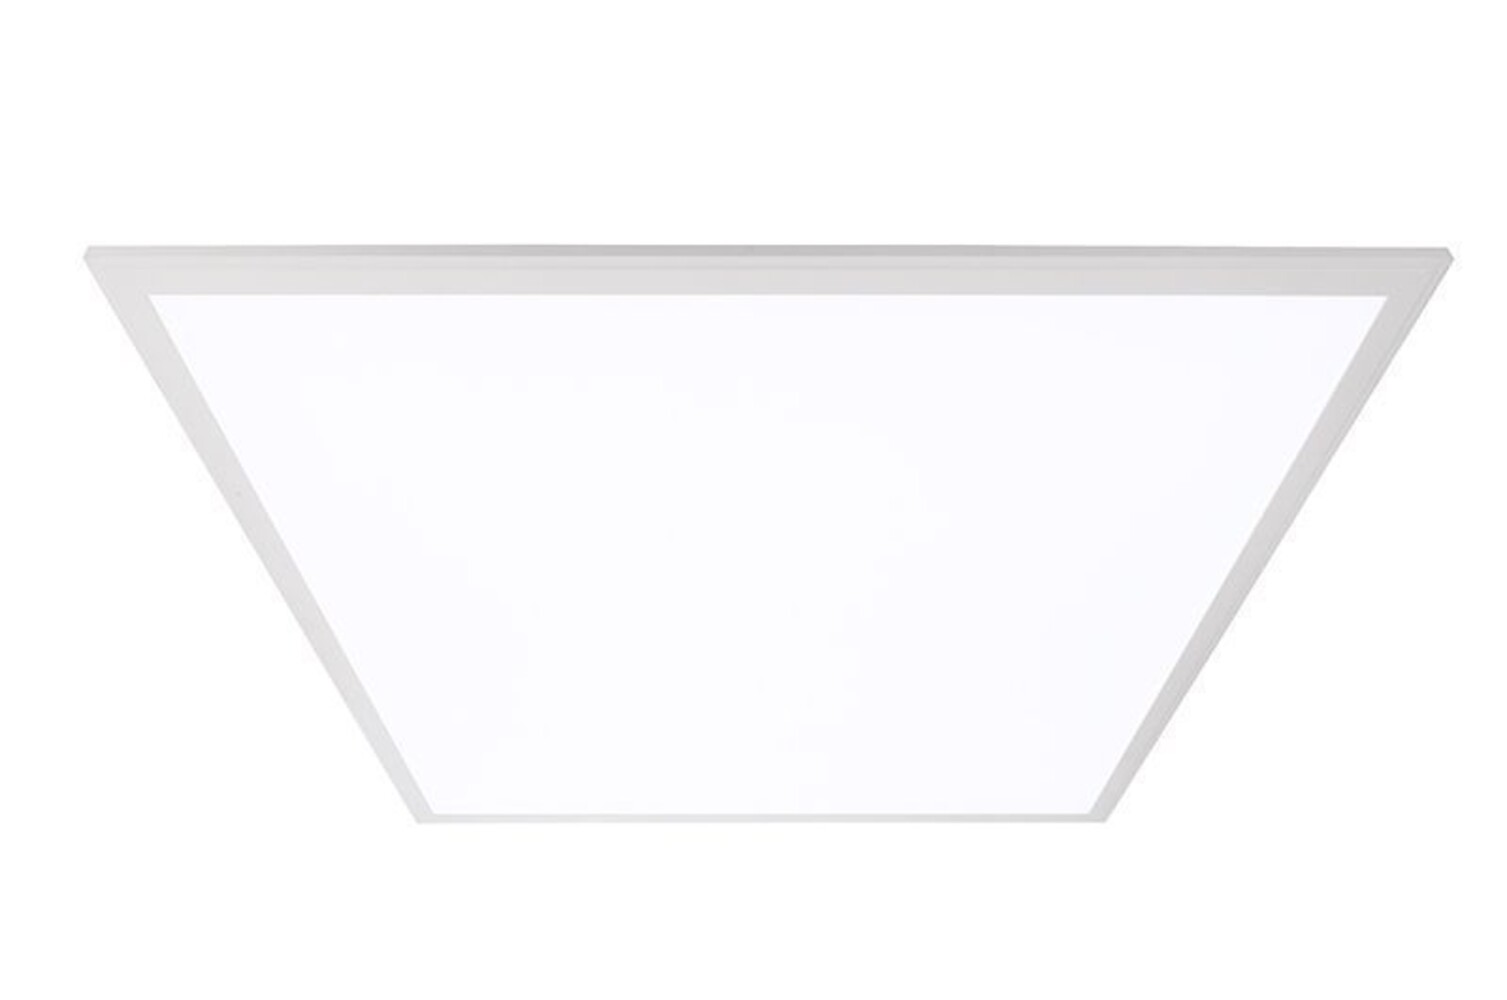 Hochwertiges LED Panel der Marke Deko-Light in modernem Design